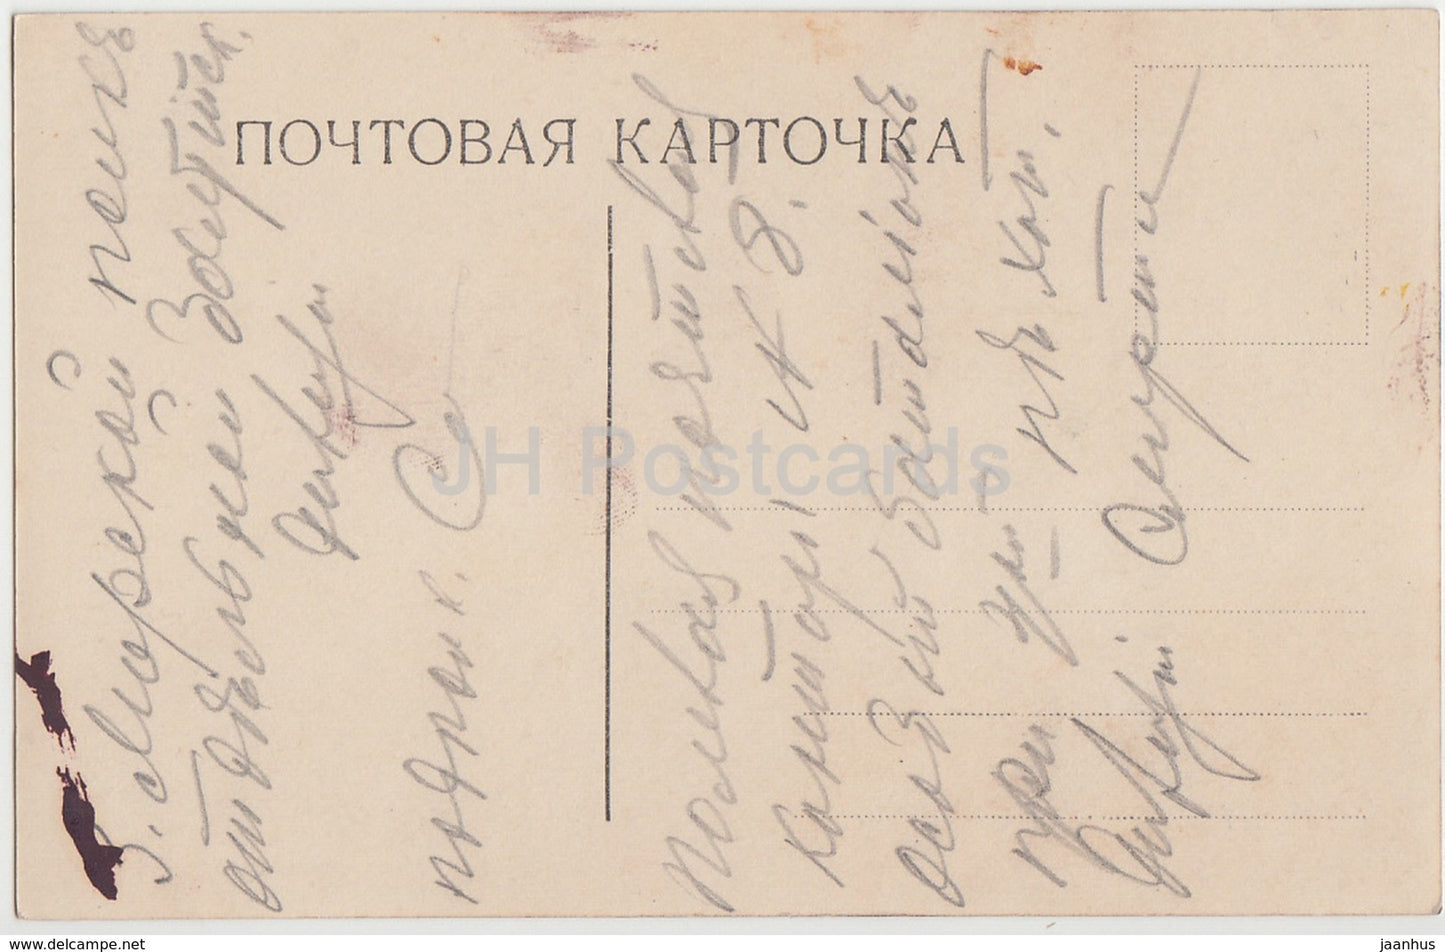 Gemälde von Rachkov – An der Tür – Hund – Russische Kunst – 655 – alte Postkarte – Kaiserliches Russland – gebraucht